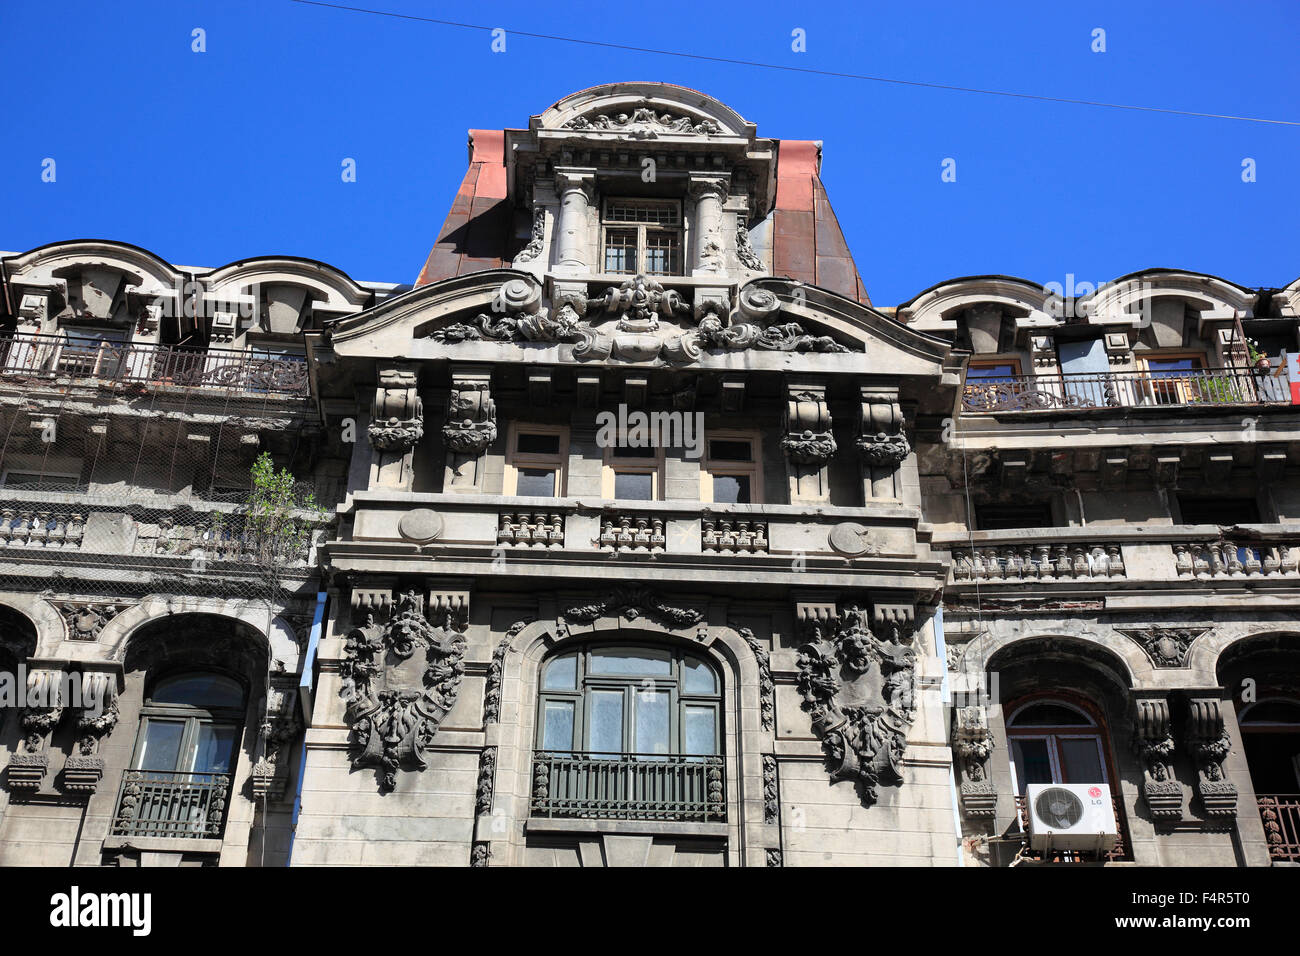 Dettagli della facciata di case storiche nel centro di Bucarest, Romania Foto Stock